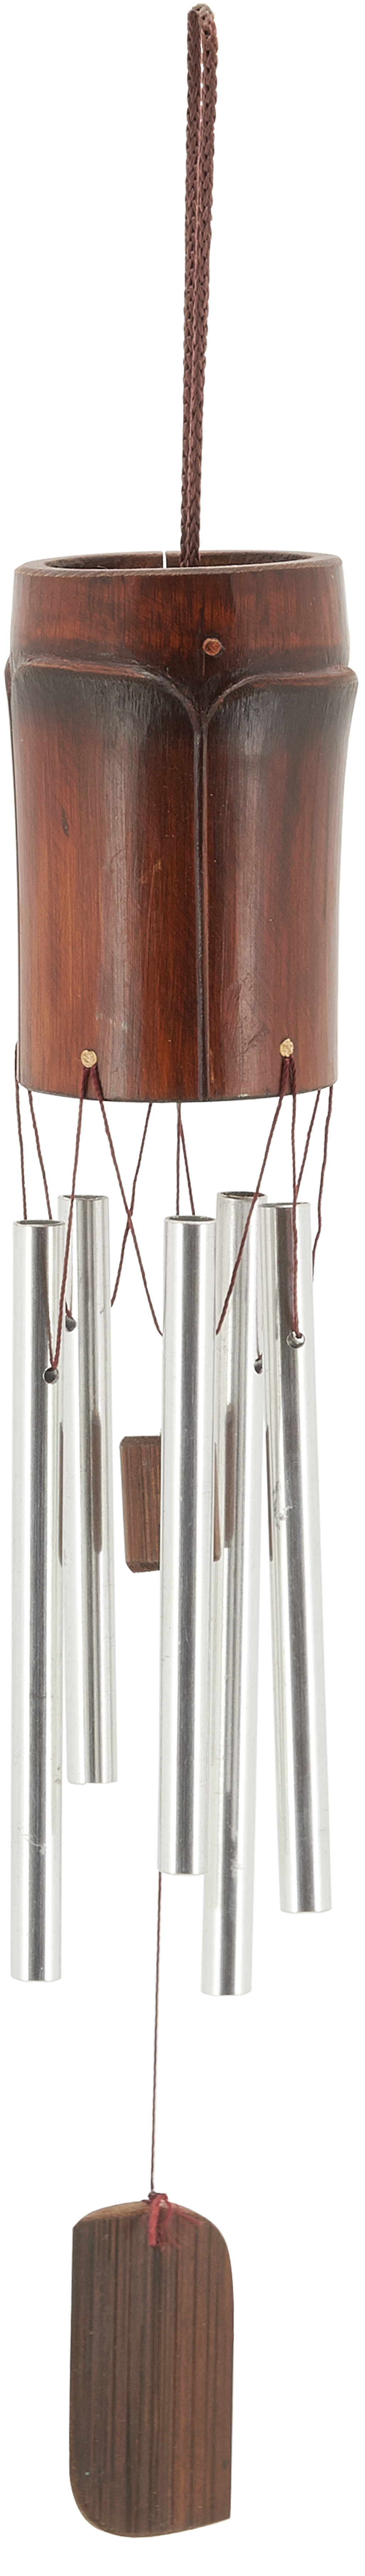 Carillon en bambou et métal 45 cm